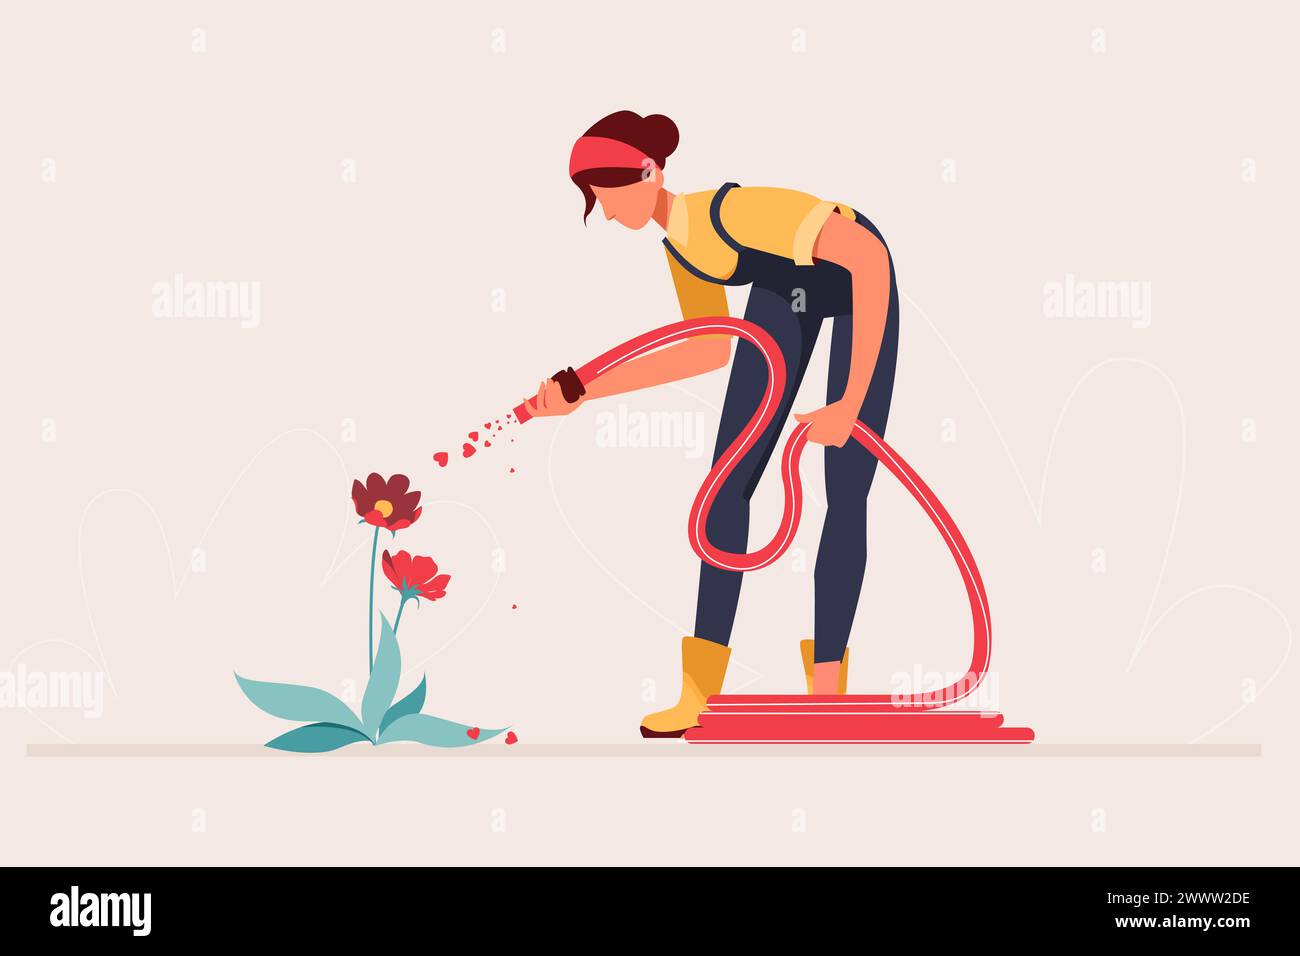 Junge Frau, die Blume mit Wasserschlauch bewässert flaches Design-Konzept, Junge weibliche Gartenarbeit Vektor-Illustration Stock Vektor